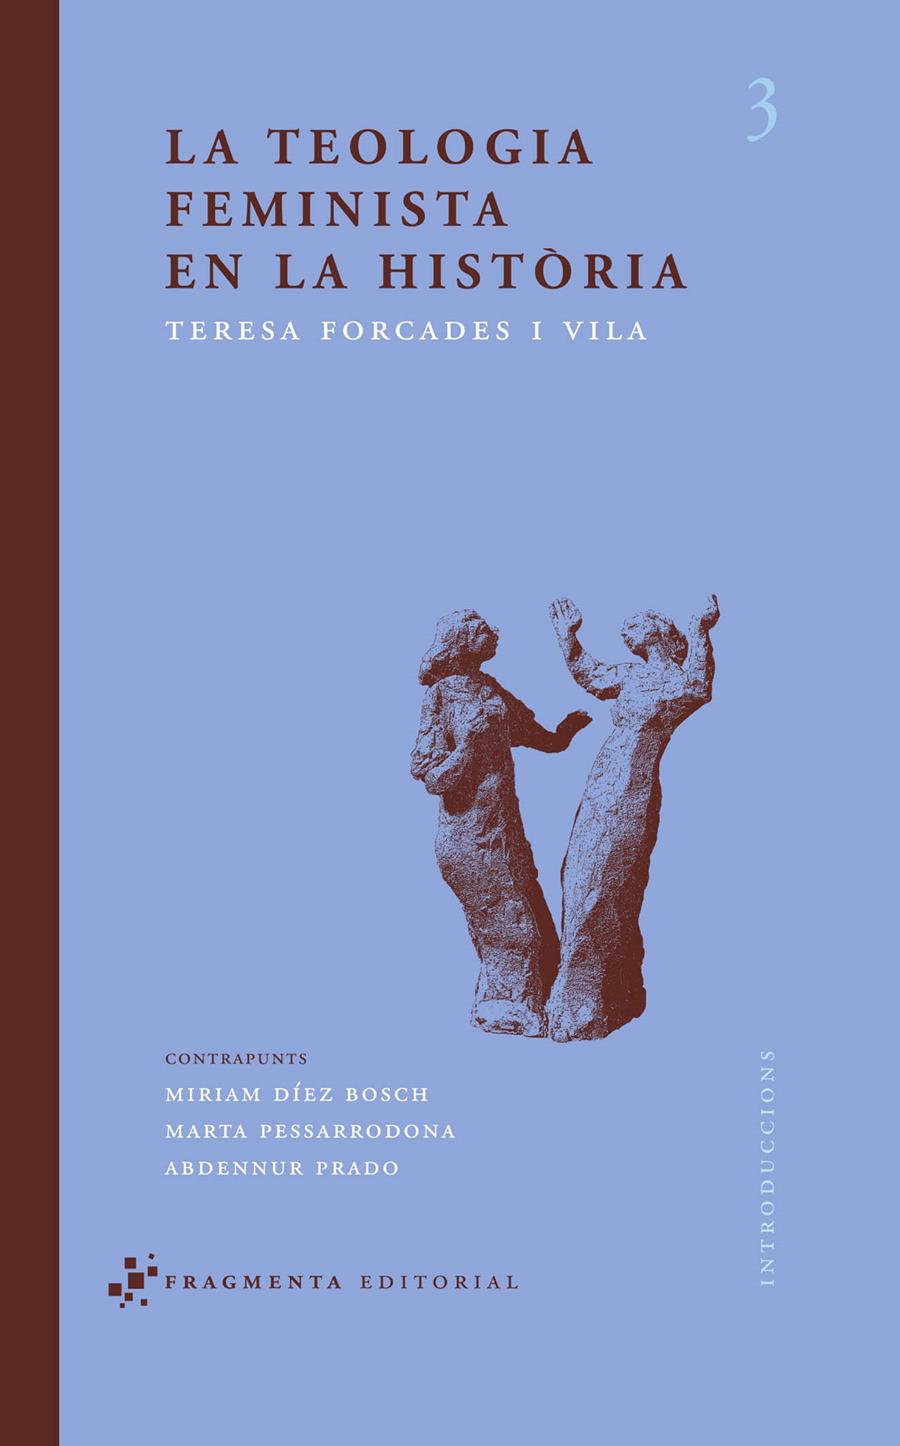 La teologia feminista en la història | Forcades i Vila, Teresa | Cooperativa autogestionària